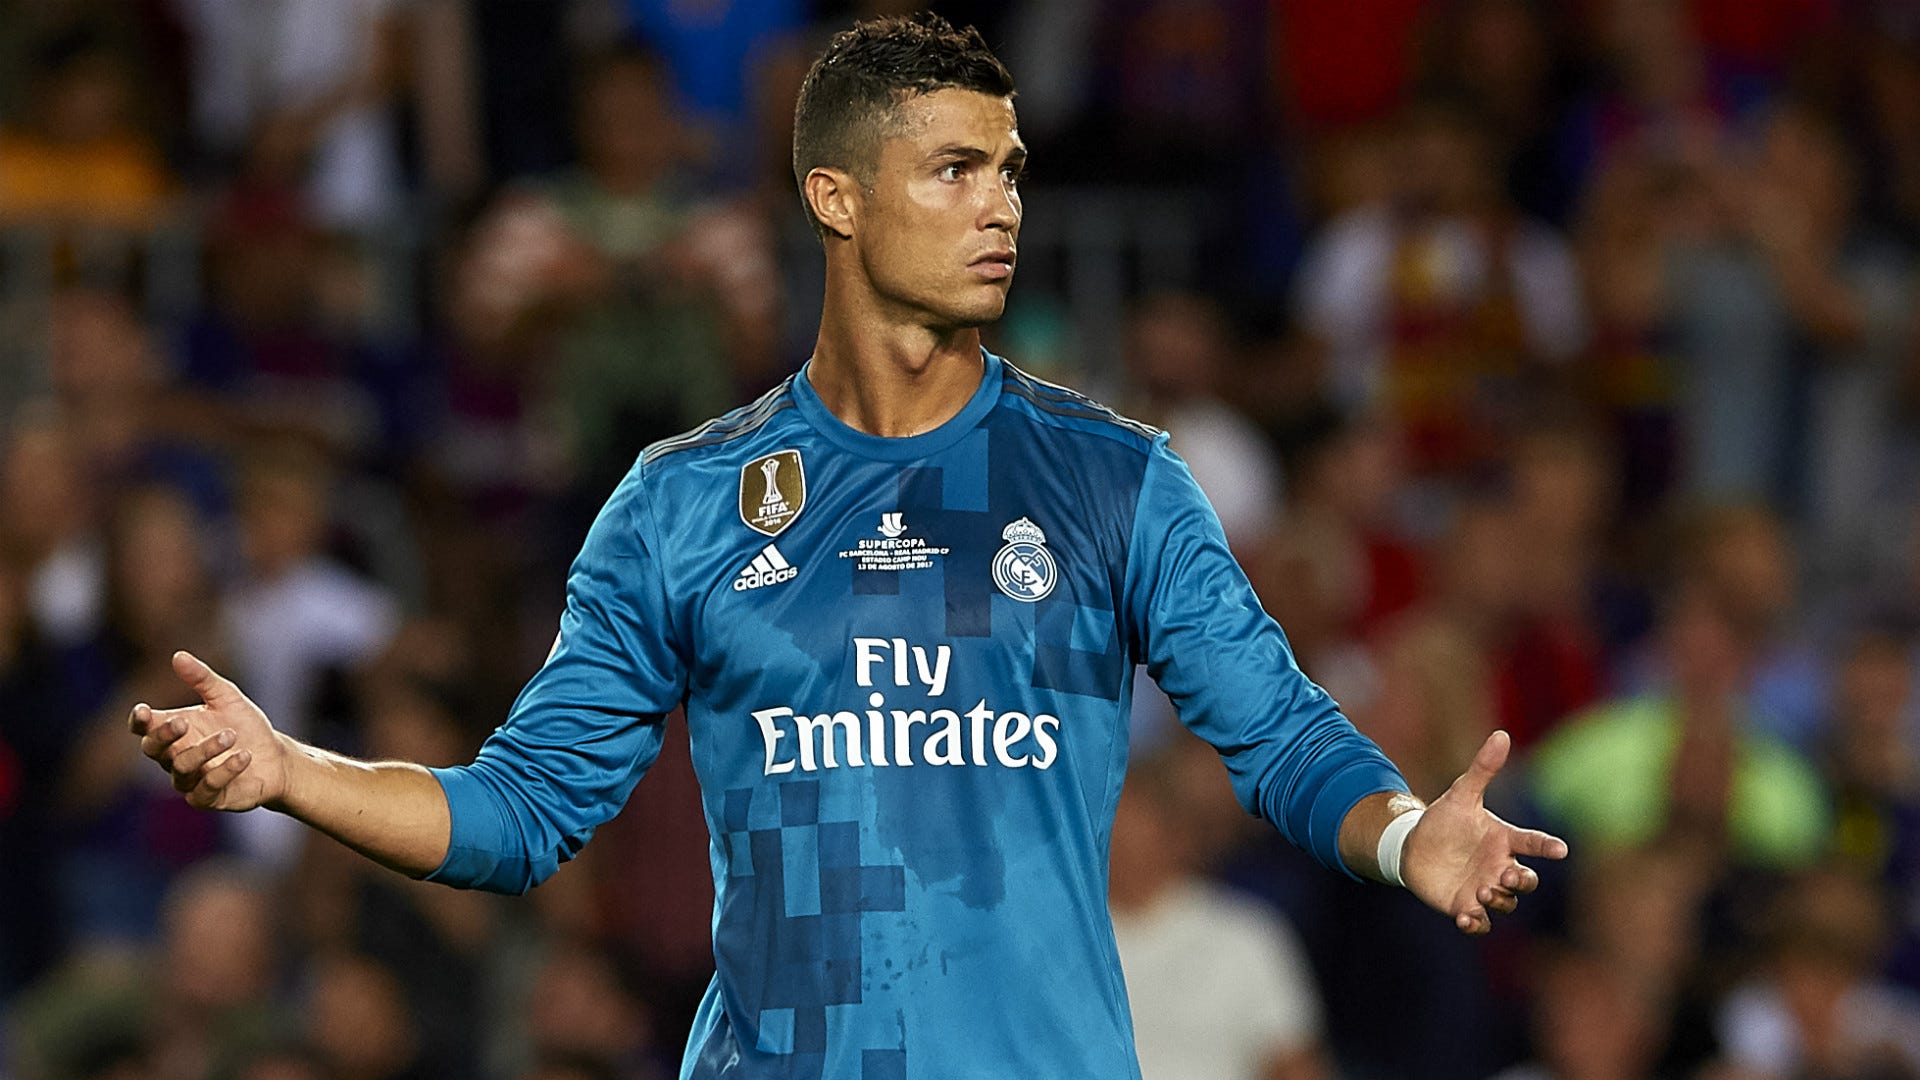 Cristiano Ronaldo Real Madrid Supercopa de Espana